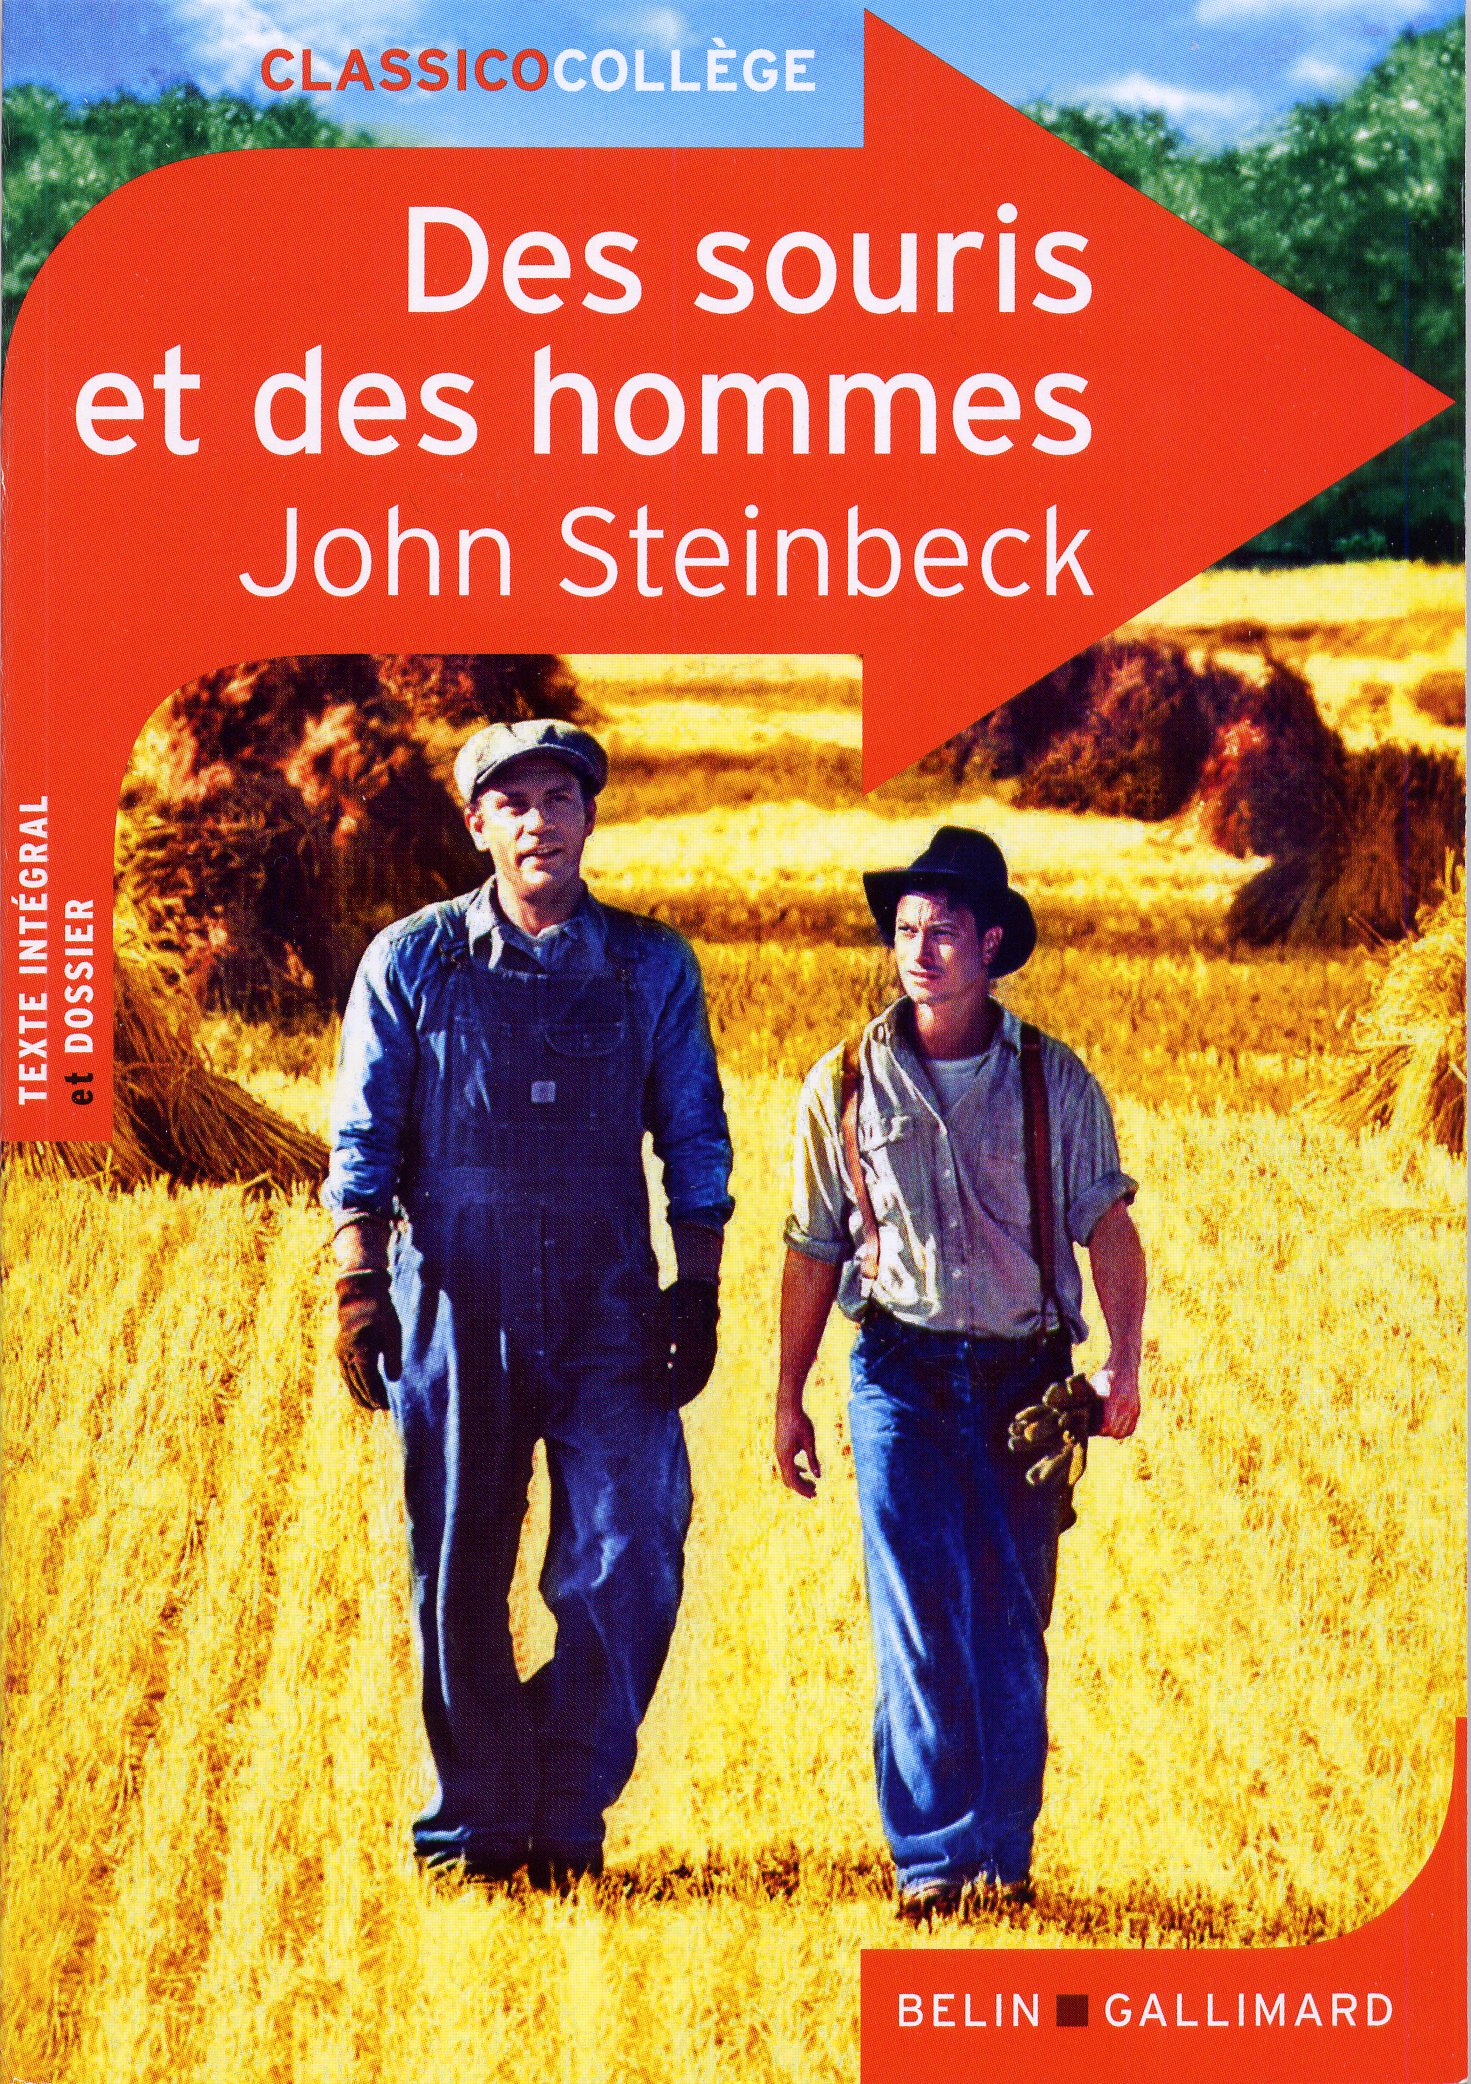 Des souris et des hommes, Steinbeck 